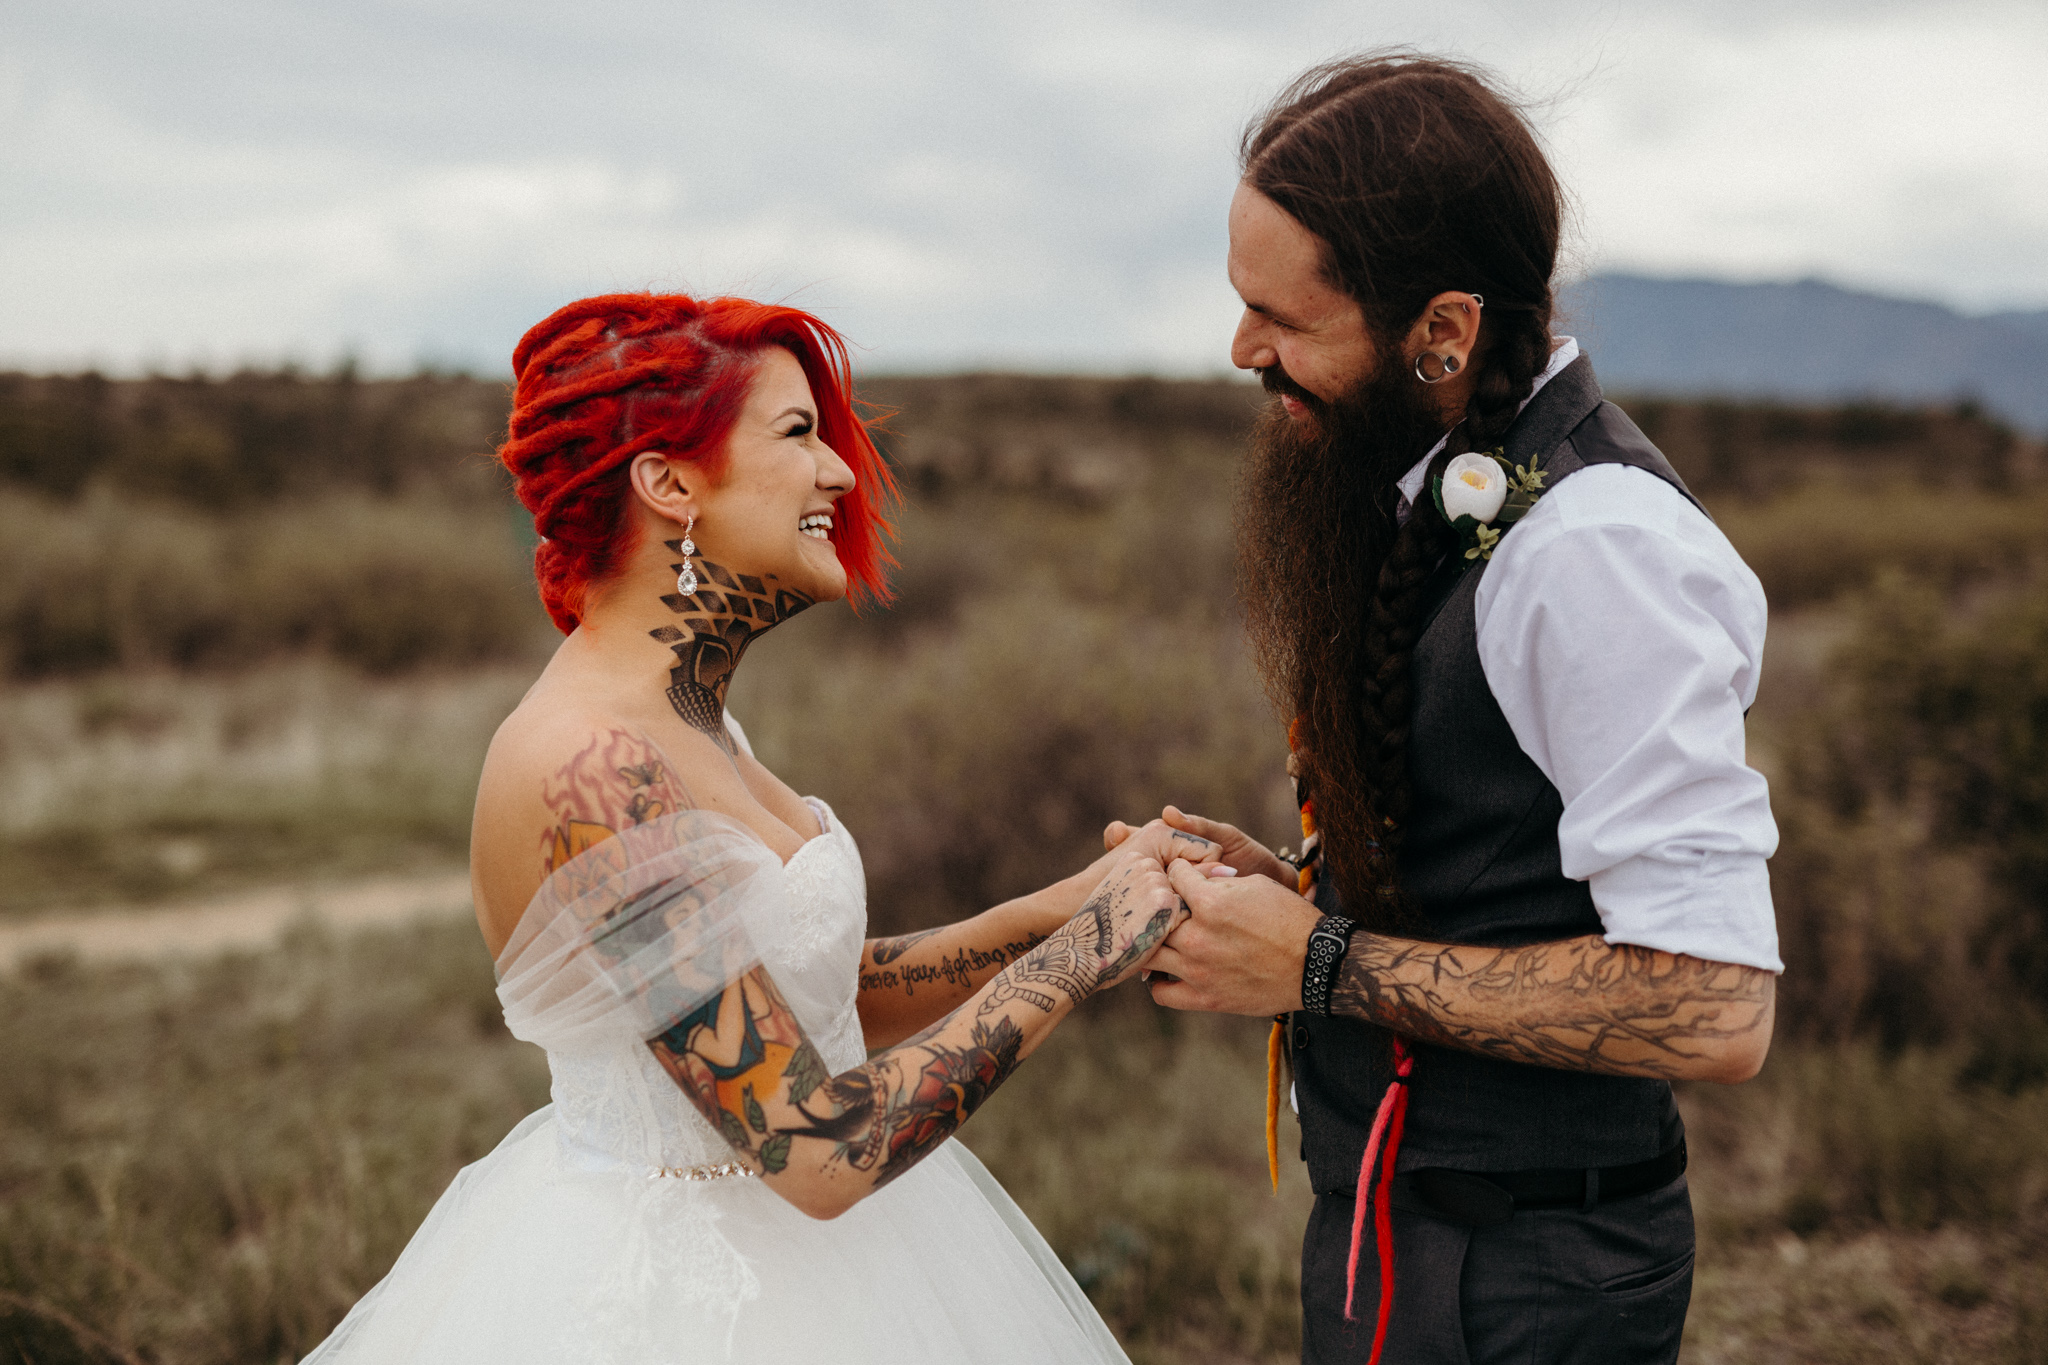 Edgy Hippie Wedding In The Colorado Mountains // Colorado Springs, CO // Victoria Selman Photographer